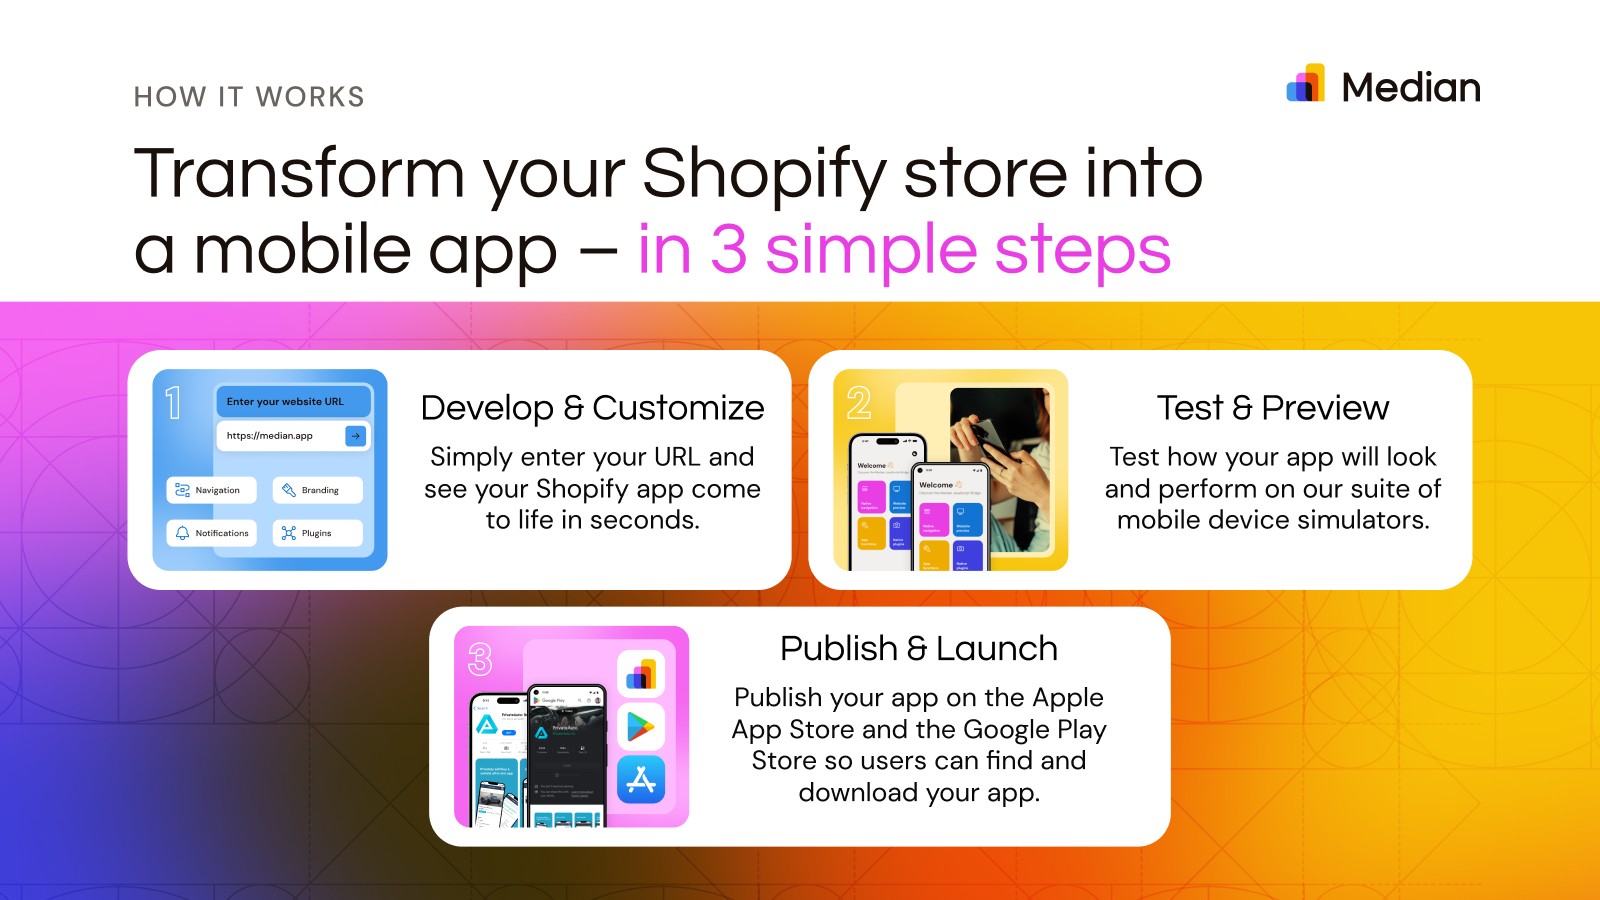 Transformér din Shopify-butik til en mobilapp i 3 enkle trin